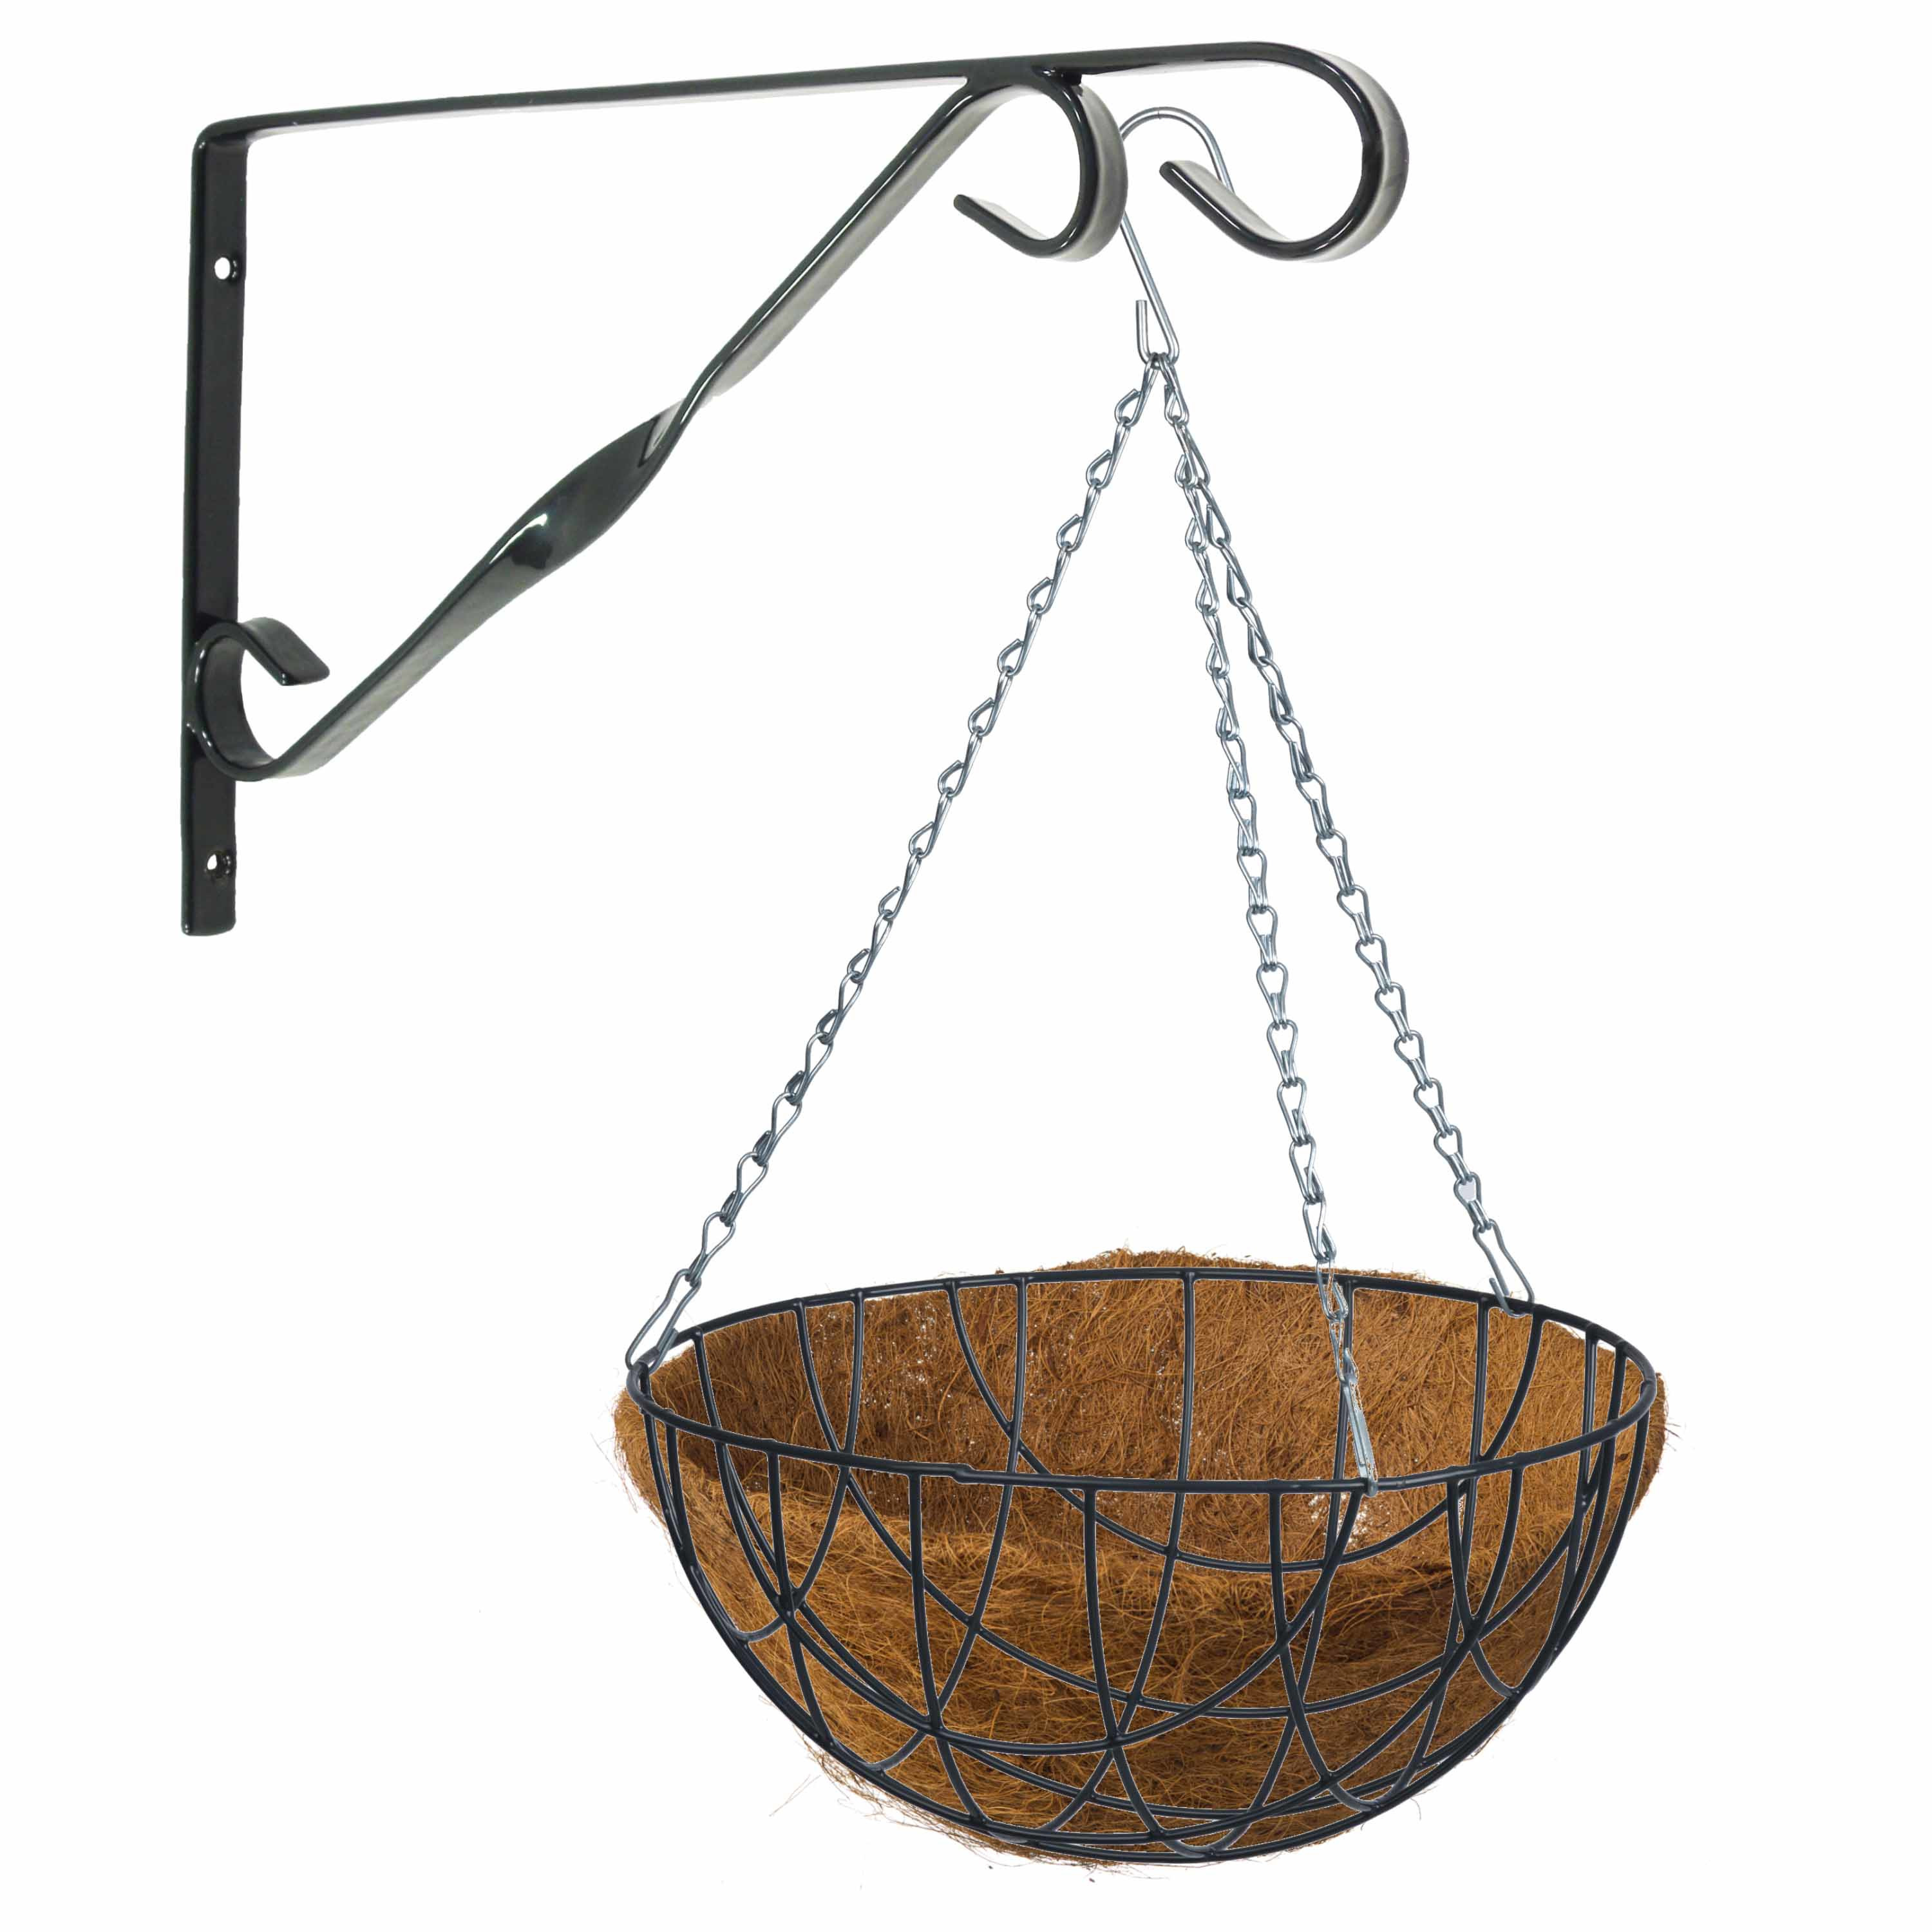 Hanging basket 35 cm met klassieke muurhaak zwart en kokos inlegvel metaal complete hangmand set